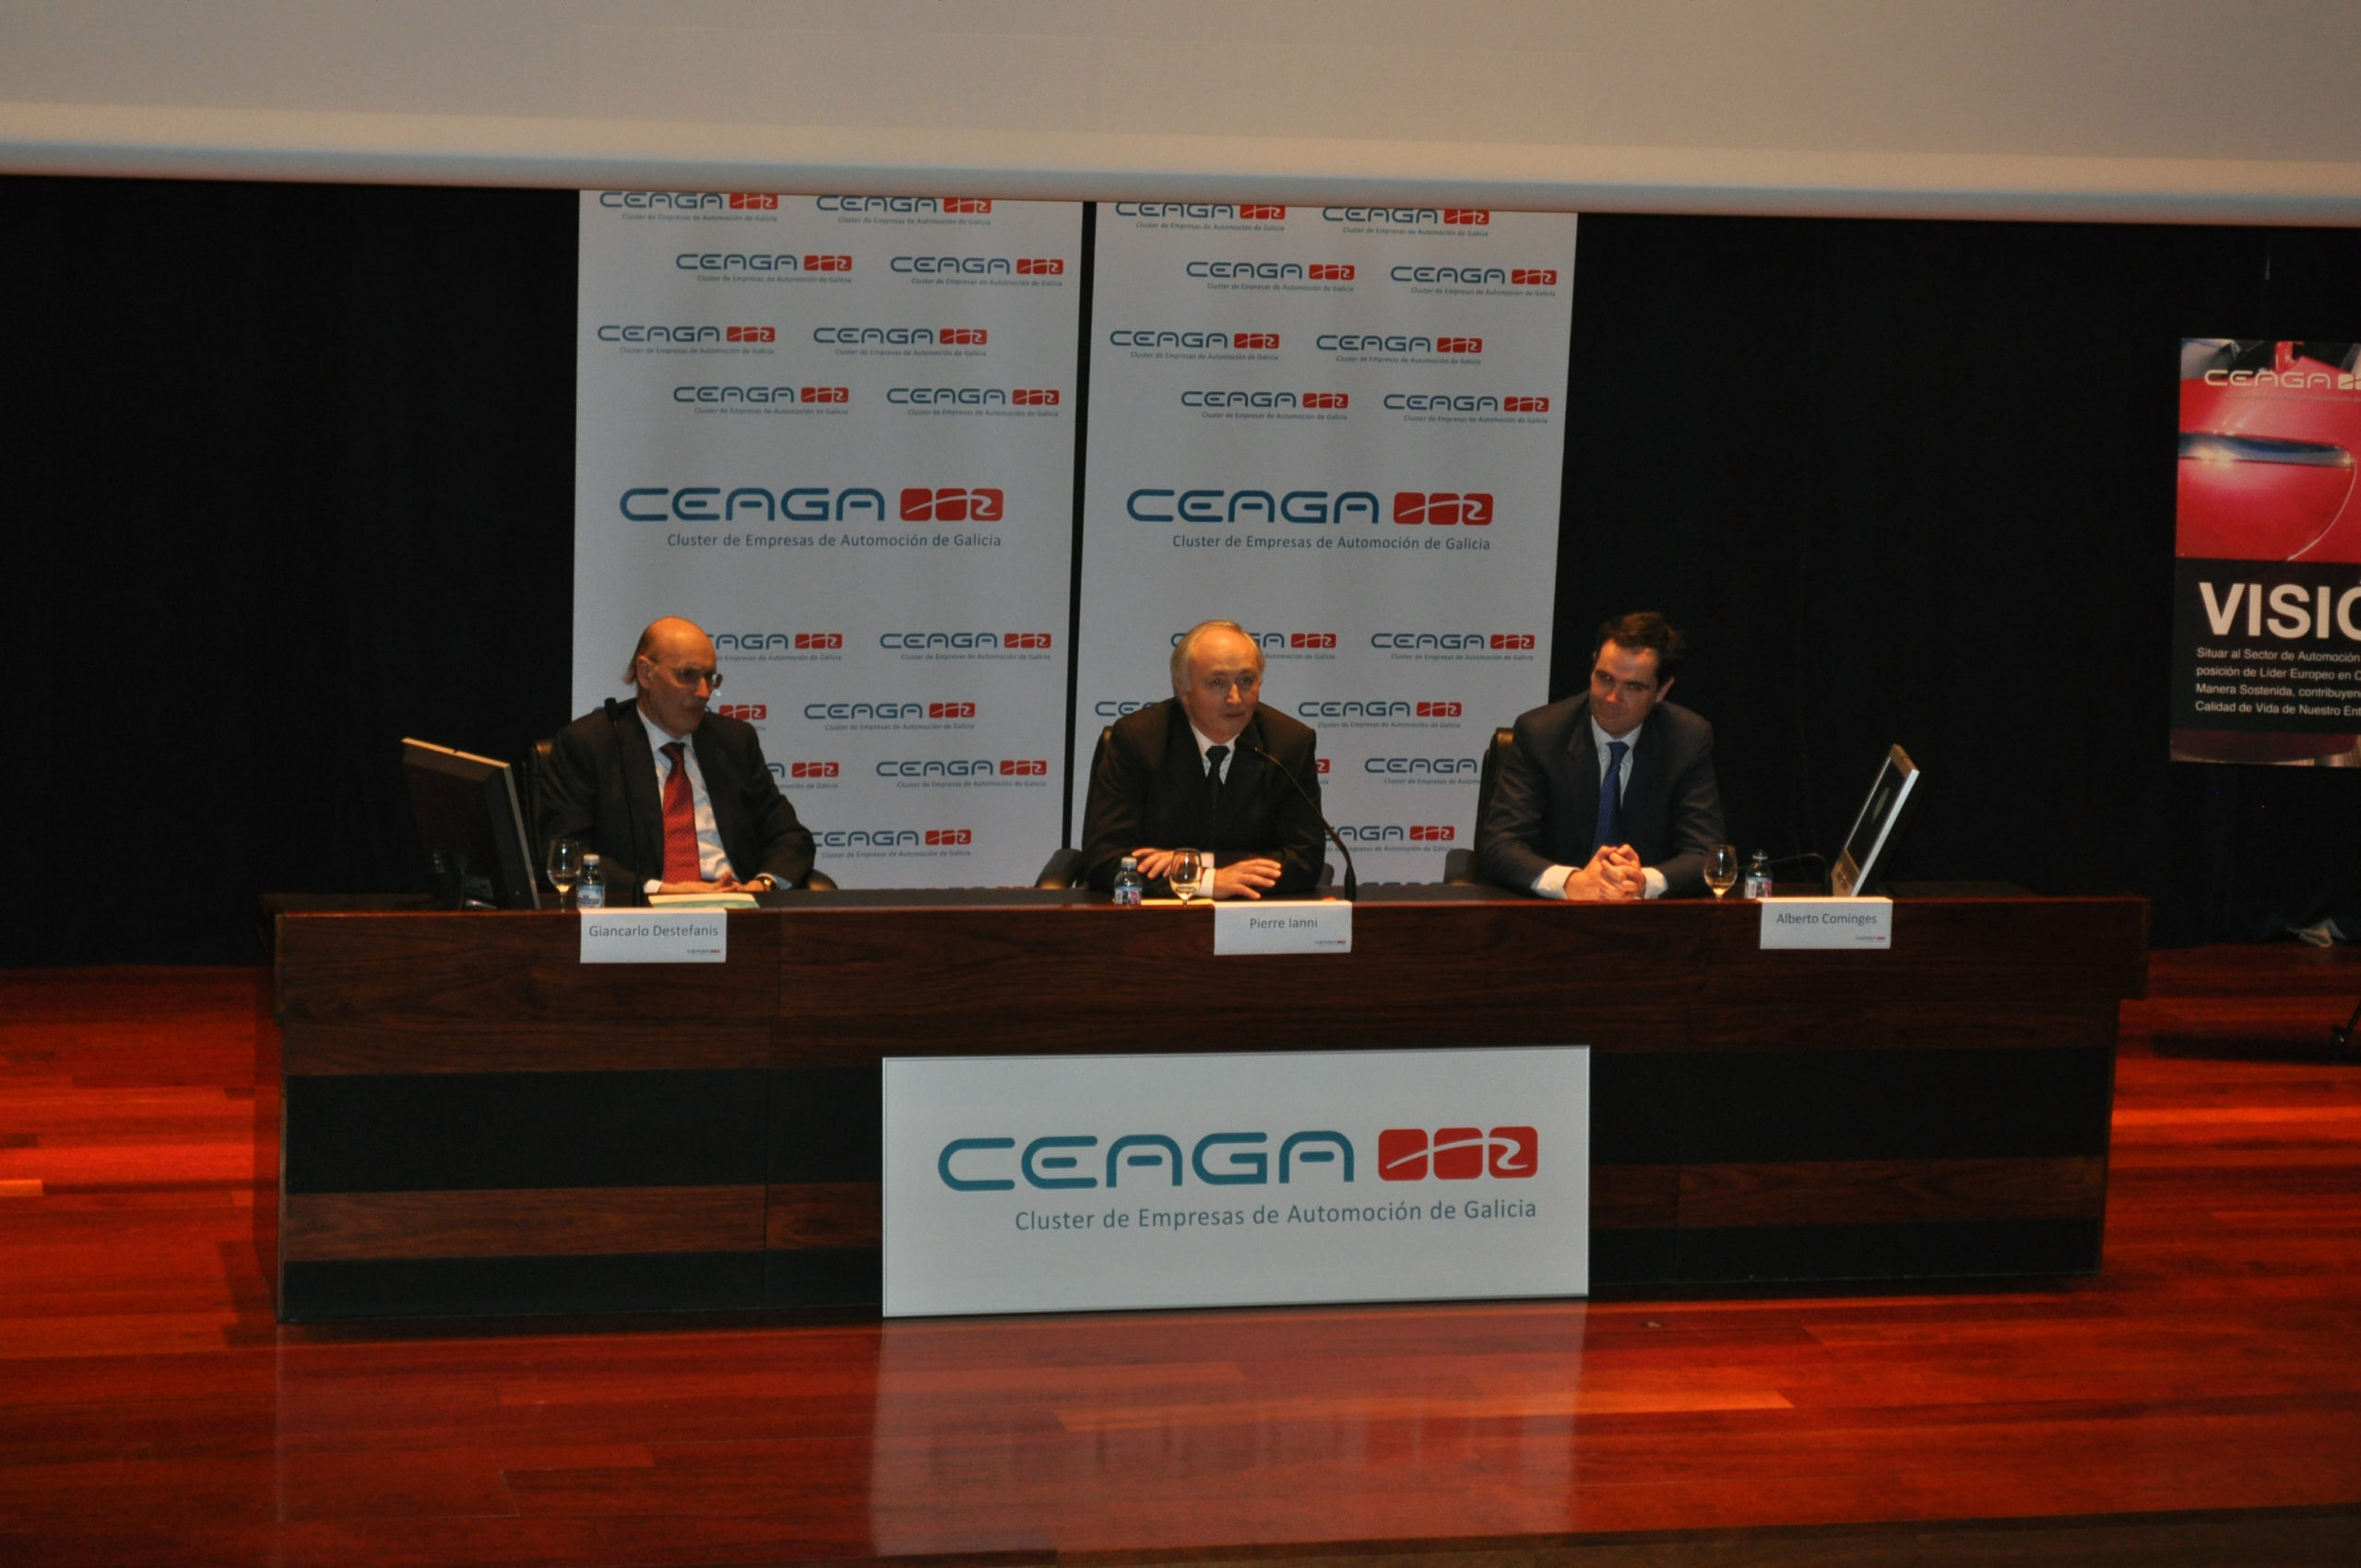 Pierre Ianni, Director de PSA Vigo, durante su intervención, junto con Alberto Cominges, Gerente de CEAGA y Giancarlo Destefanis, Sensei Lean del Cluster.